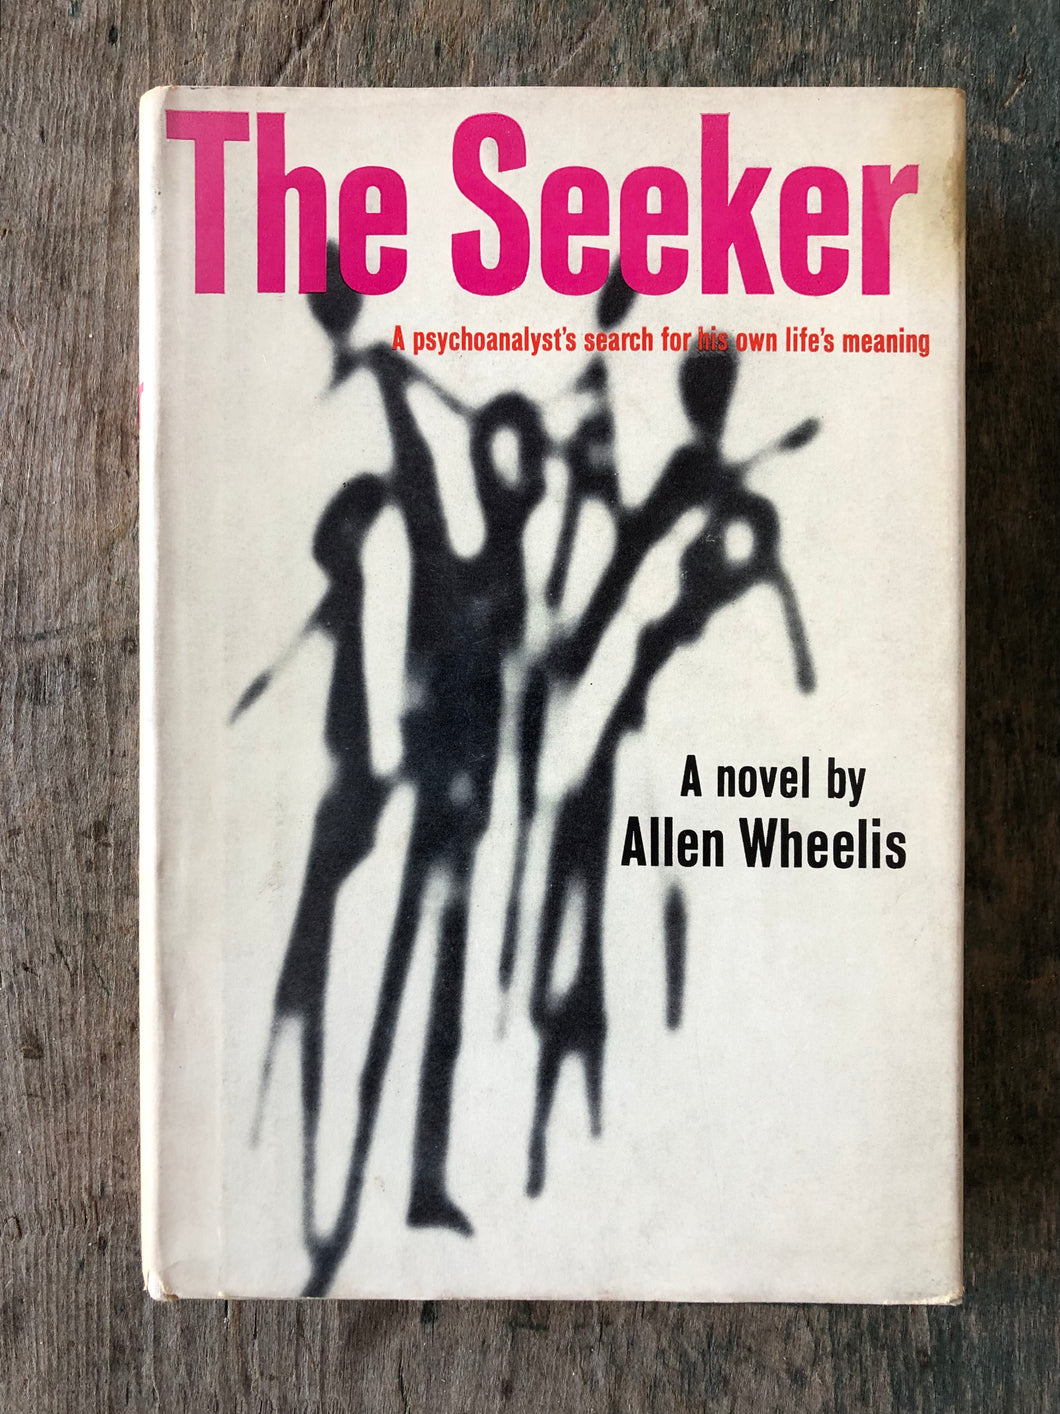 The Seeker by Allen Wheelis